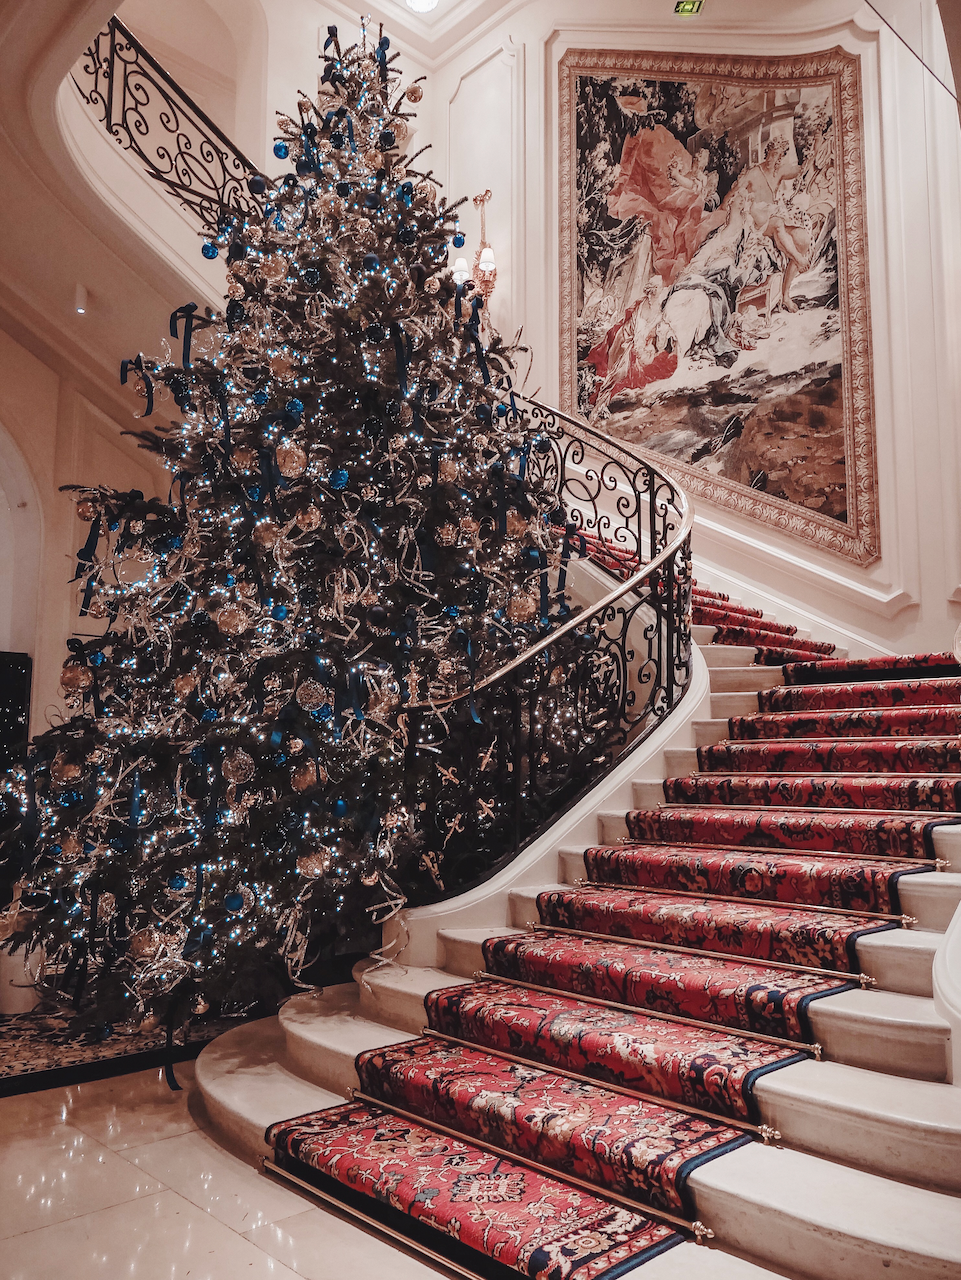 Le sapin de Noël du Ritz - Paris - France